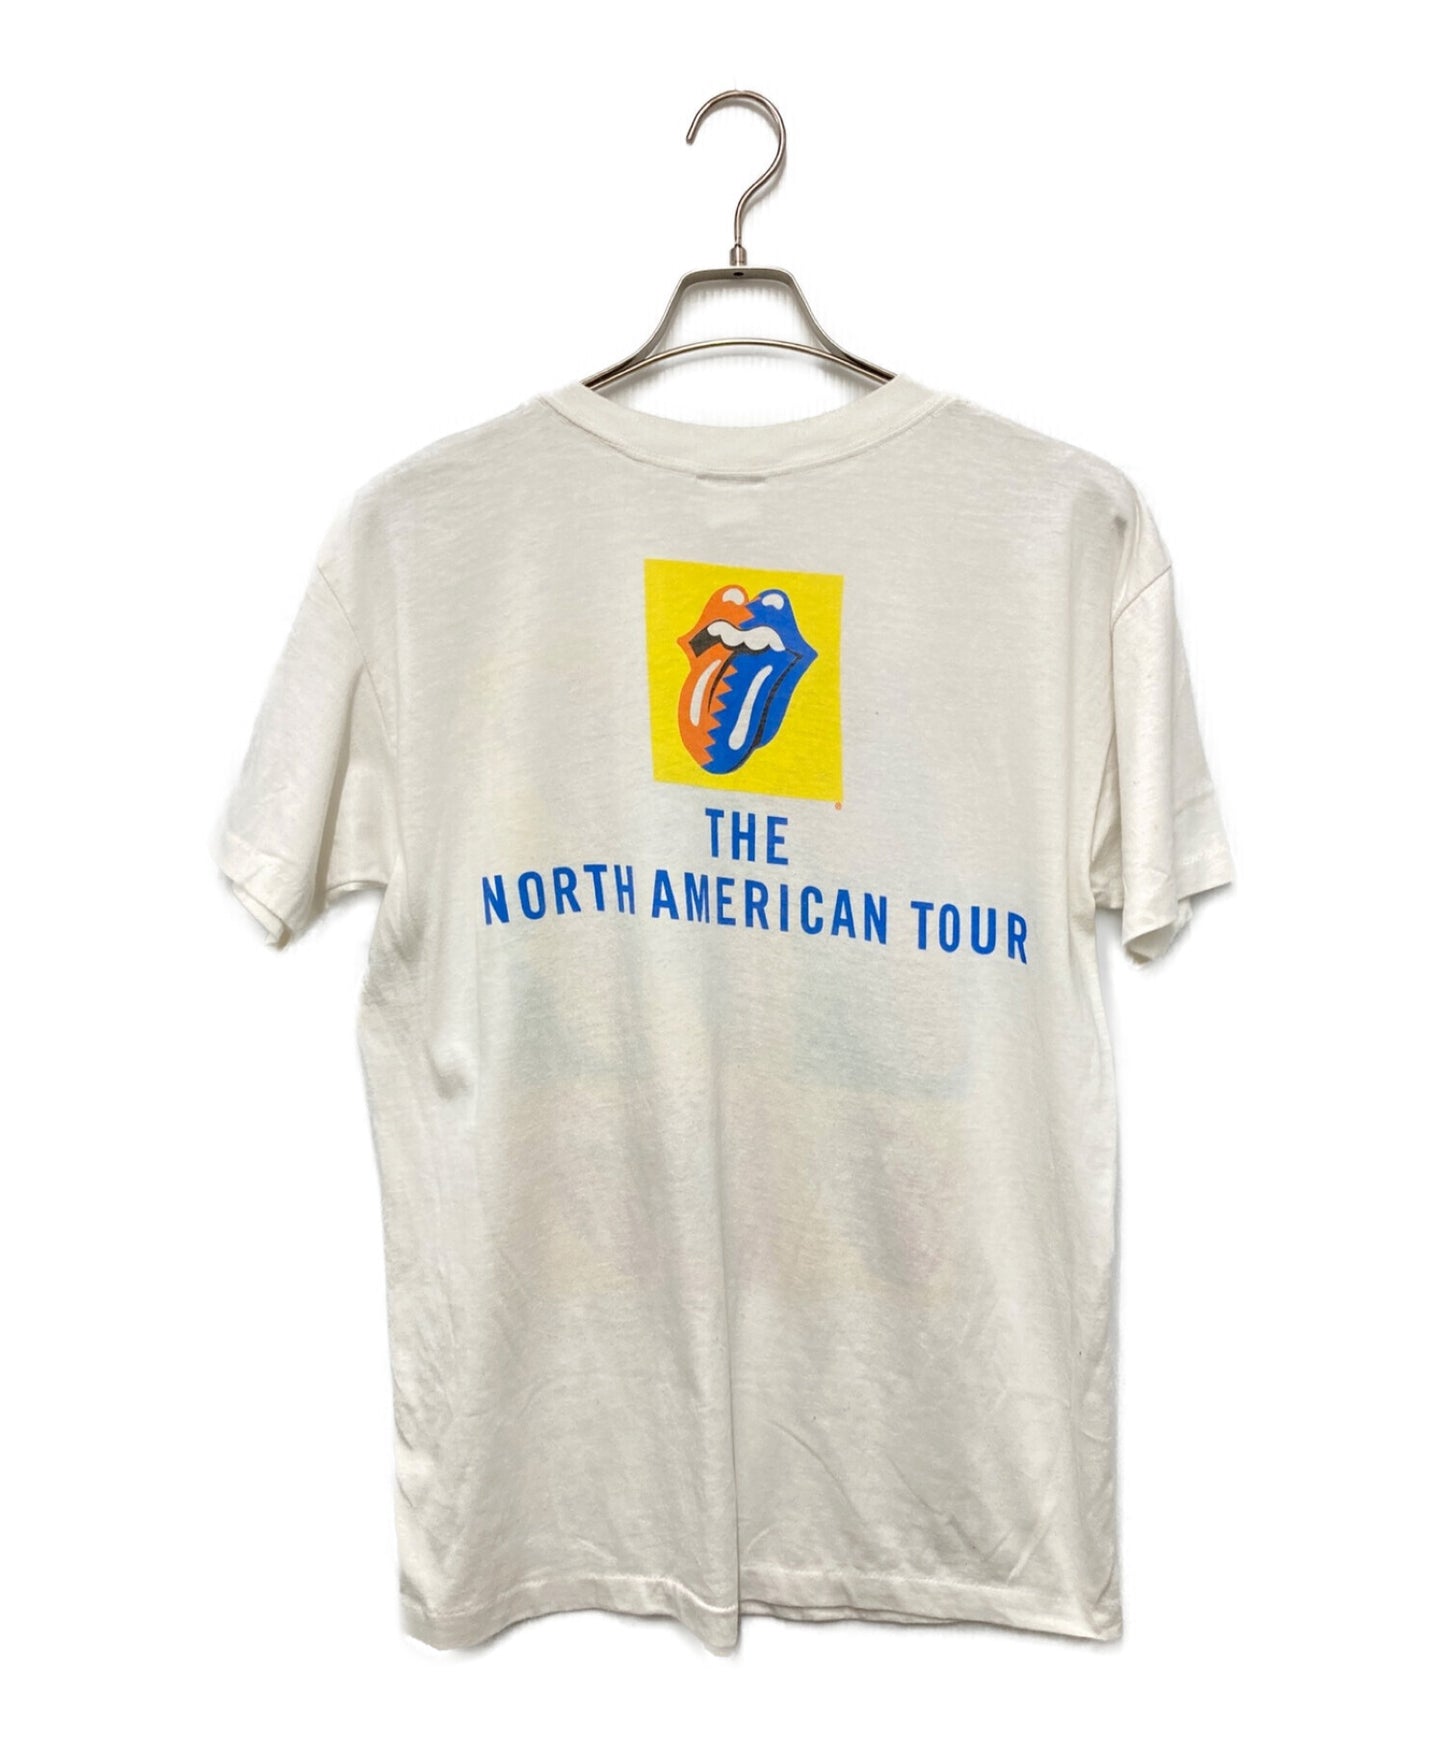 滾石樂隊T卹，版權1989北美巡迴演唱會